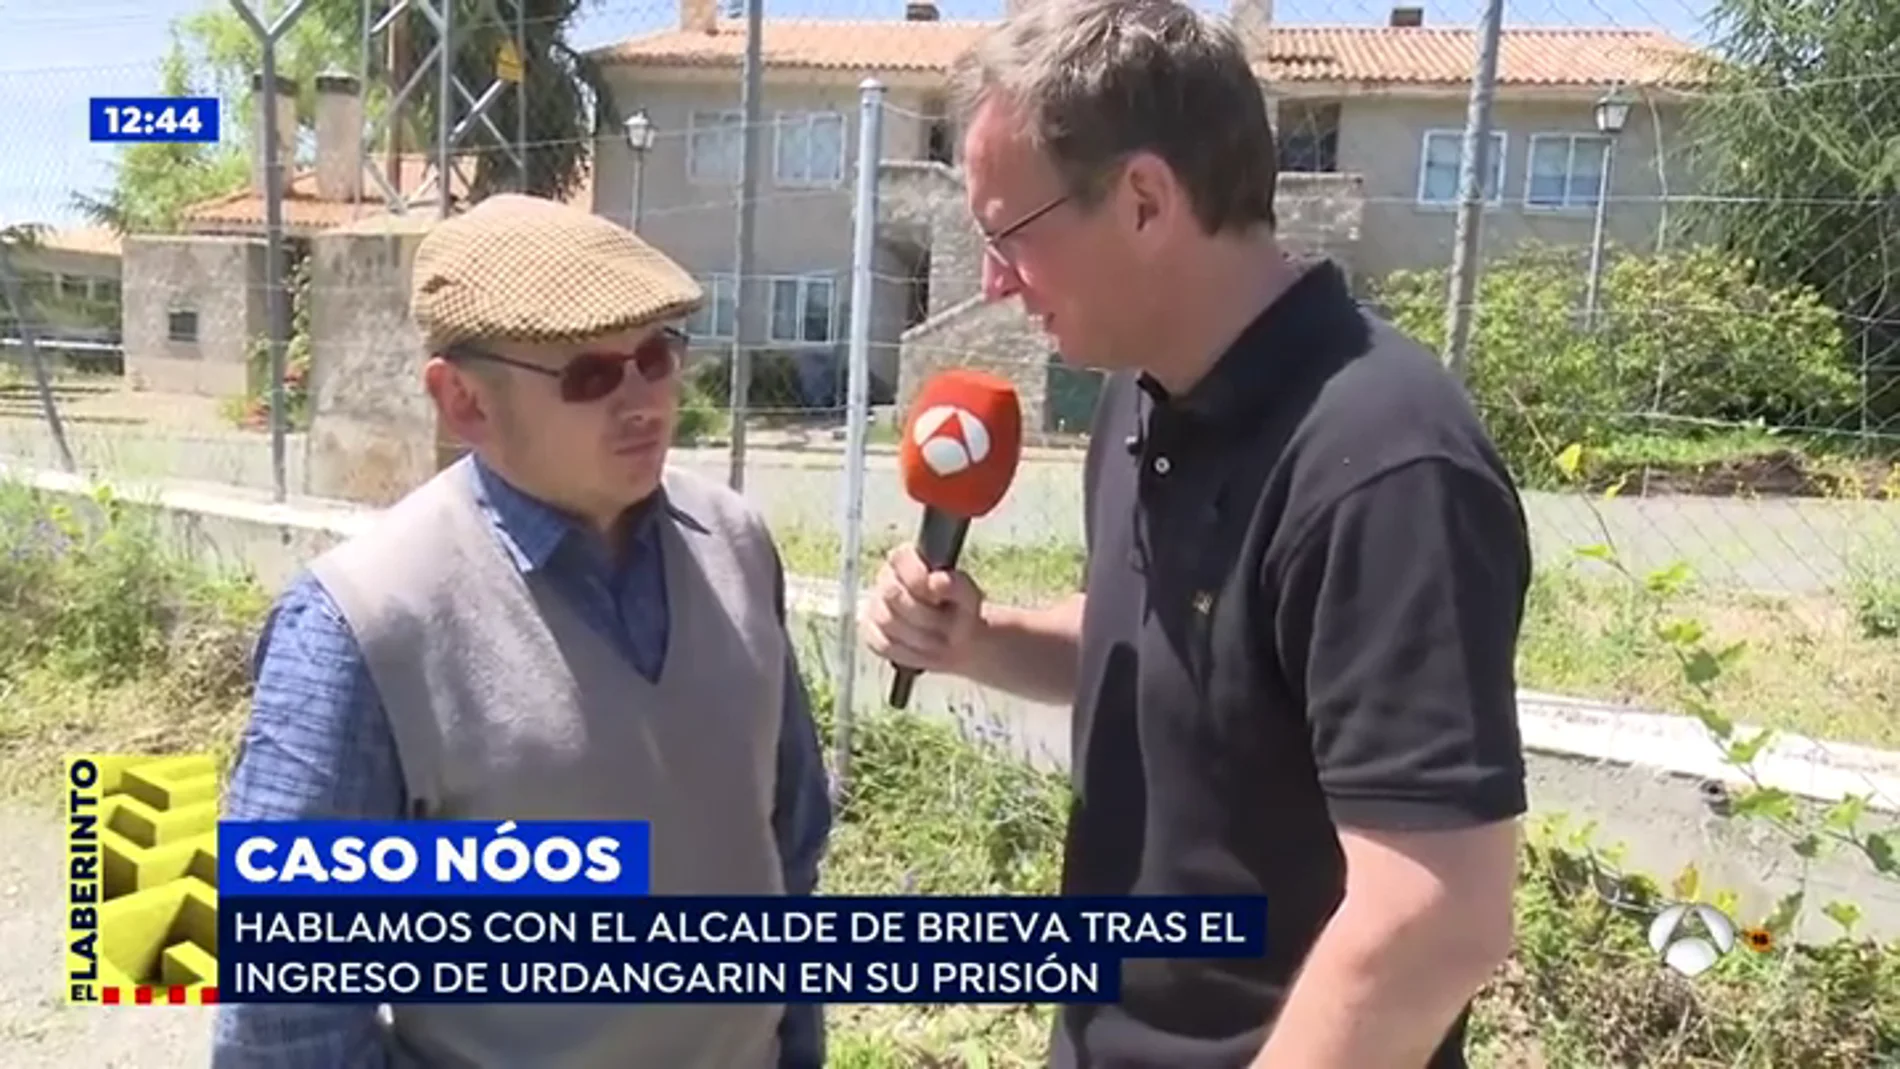   El alcalde de Brieva, sobre el ingreso en prisión de Urdangarin: "No creo yo que este señor pase frío allí"